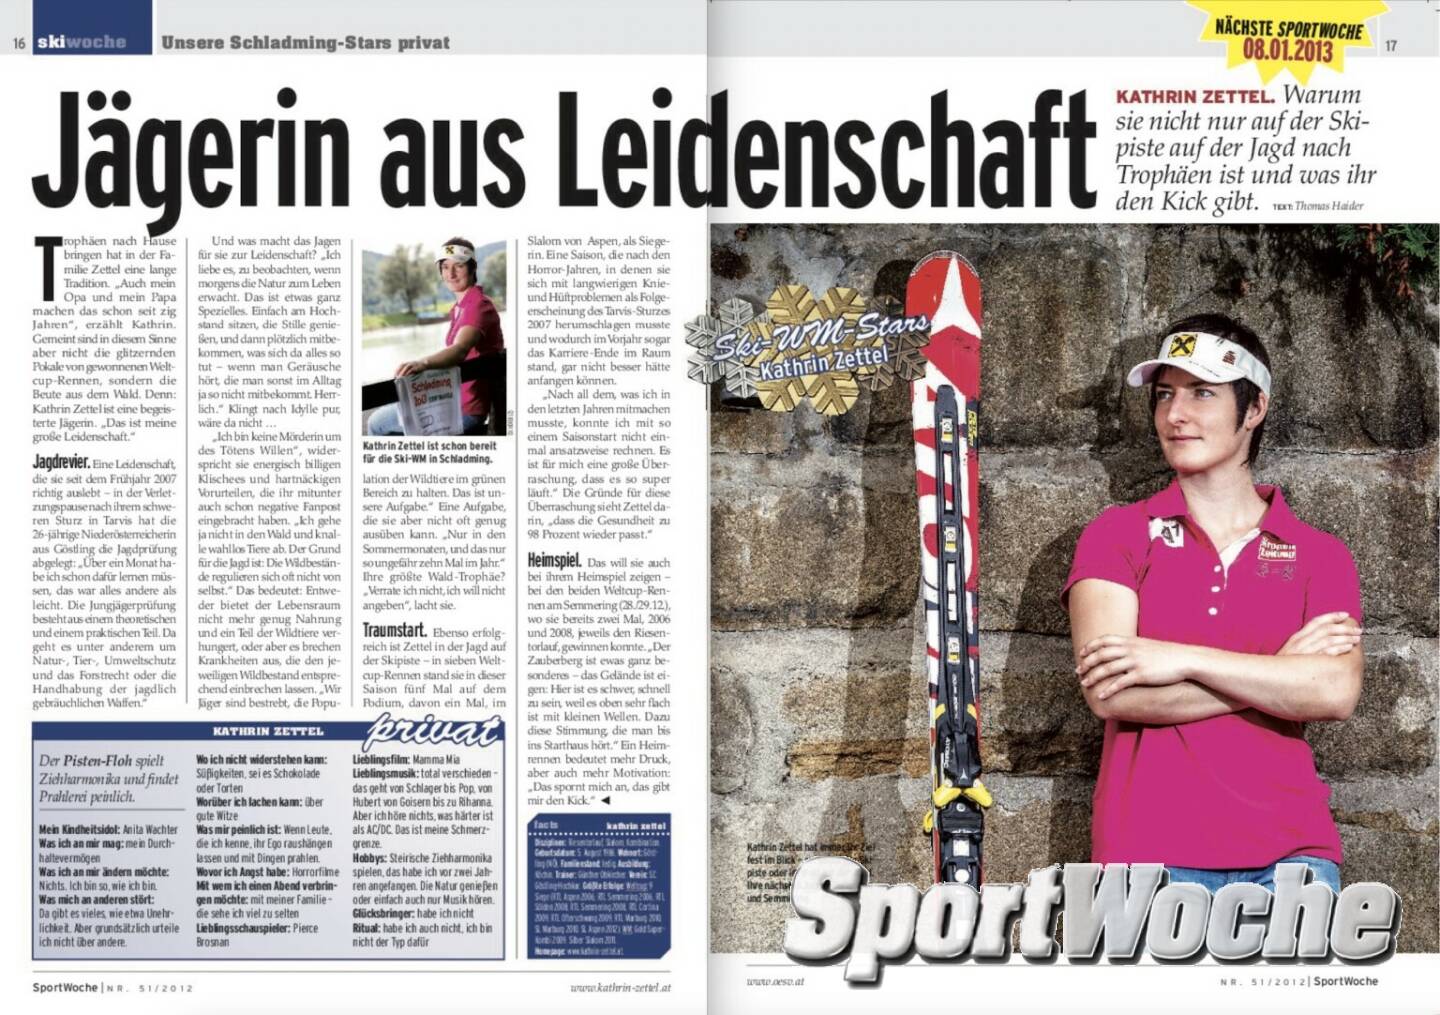 NÖ-Kalender der SportWoche, Tag 6: Kathrin Zettel war Sportlerin des Jahres in Niederösterreich, wurde 2009 Weltmeisterin in der Super-Kombination, holte zwei weitere WM- und eine Olympia-Medaille sowie 9 Weltcupsiege